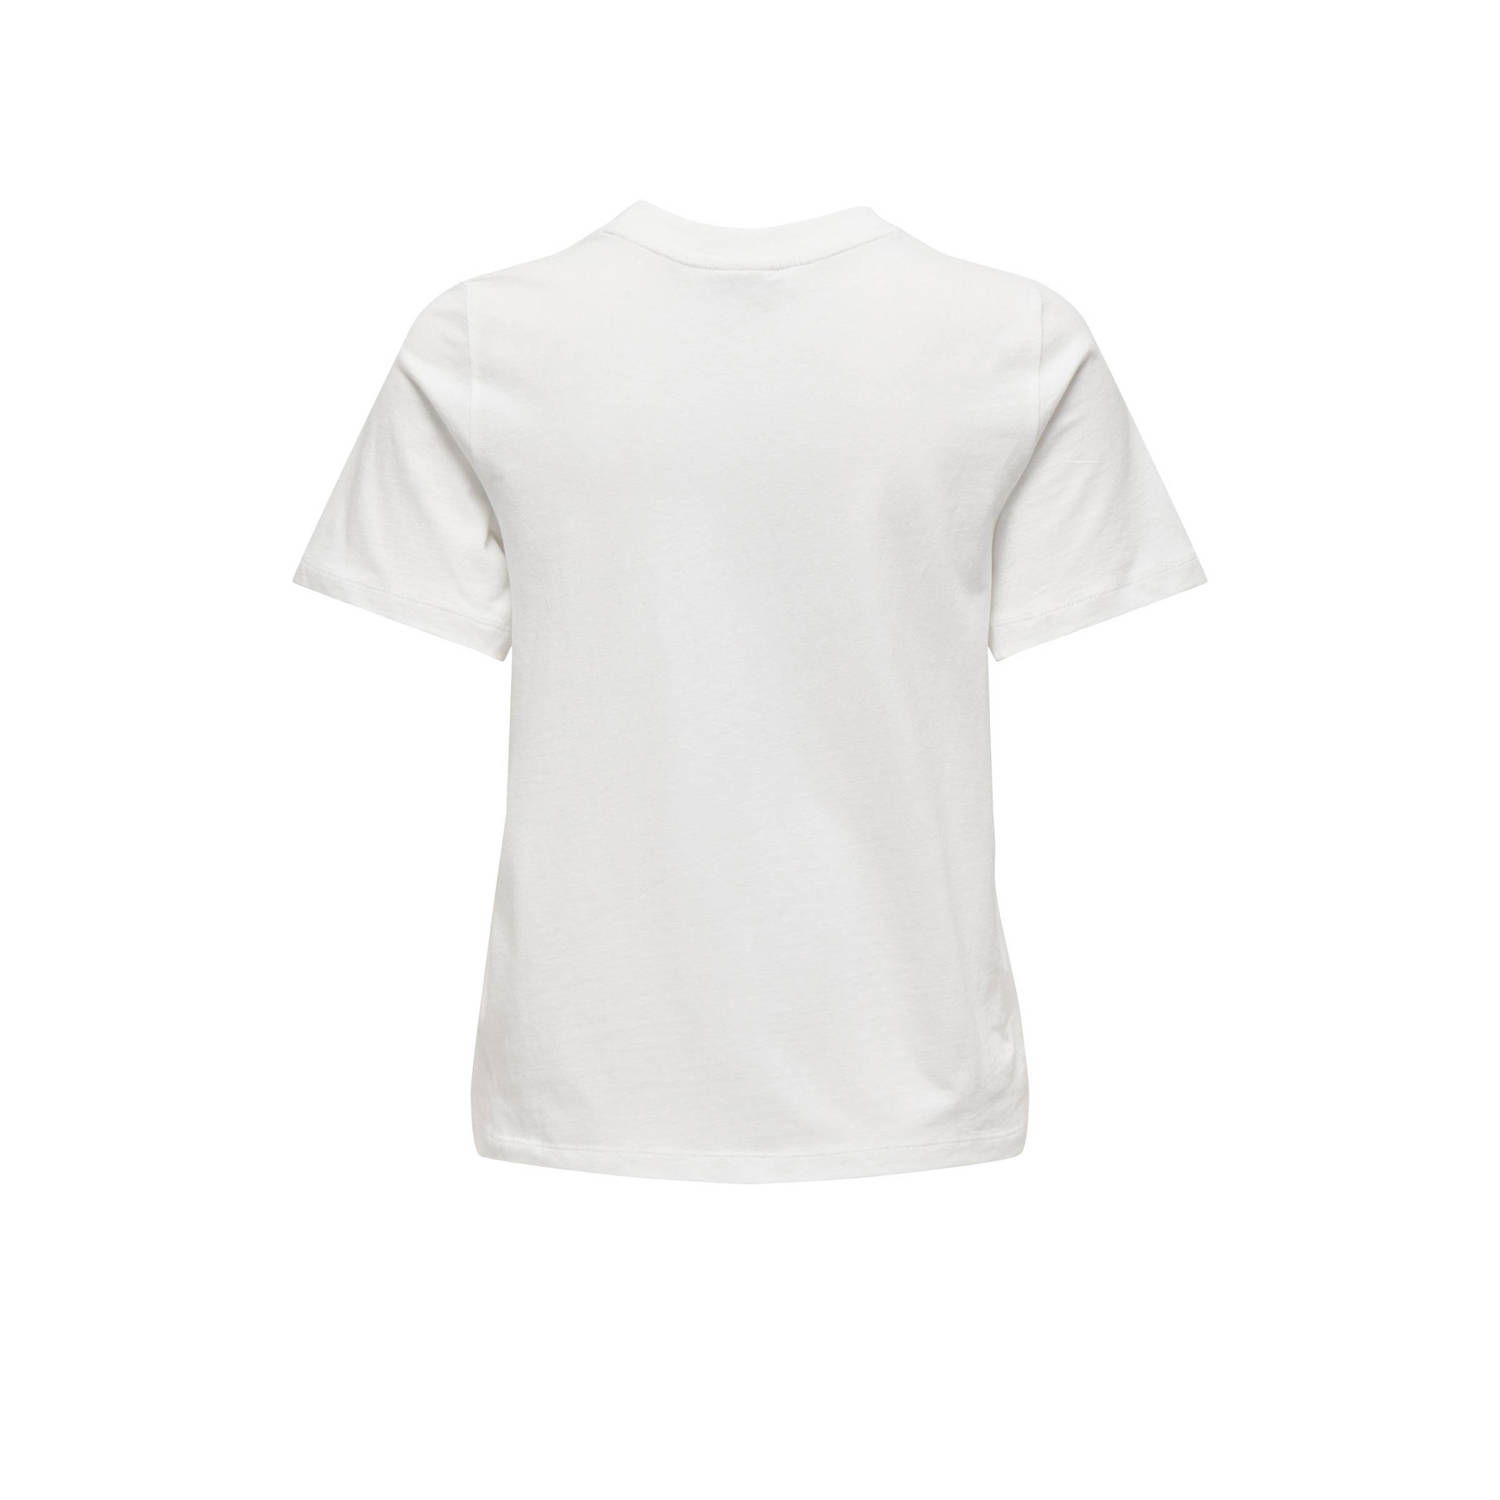 JDY PISA geweven T-shirt wit